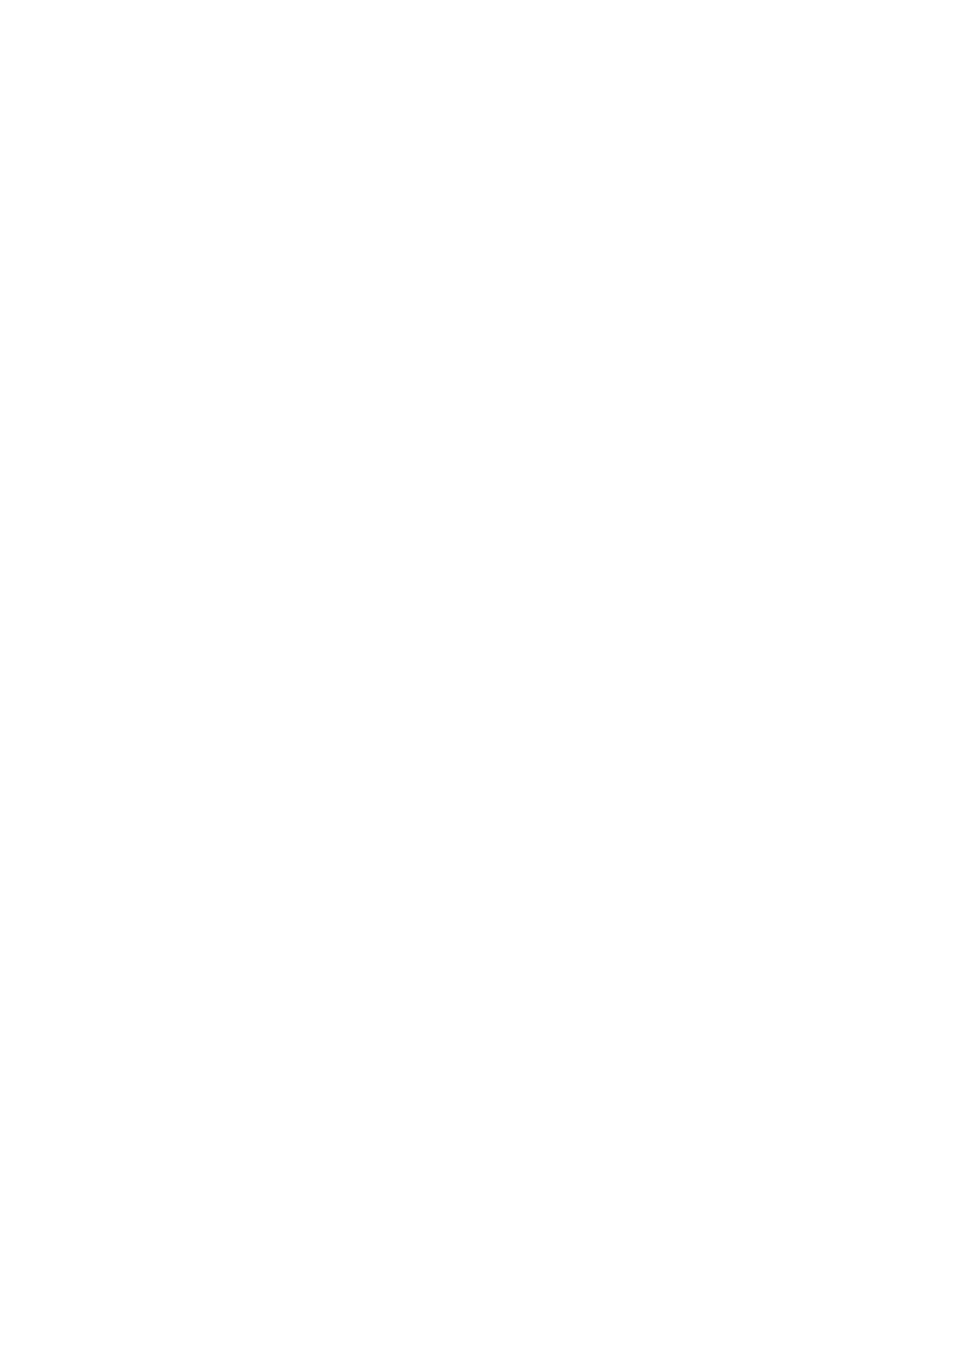 [ 网 评 ] 编 辑 : 日 期 :2012-11-07 09 10 月 20 日, 北 京 大 学 第 一 医 院 乳 腺 疾 病 中 心 刘 荫 华 教 授 做 客 央 视 健 康 之 路 栏 目, 向 大 家 普 及 乳 腺 疾 病 带 来 的 身 体 健 康 警 示, 以 及 如 何 调 养 预 防 乳 腺 疾 病 精 彩 节 目, 敬 请 收 看 ~ 嘉 宾 简 介 : 刘 荫 华,